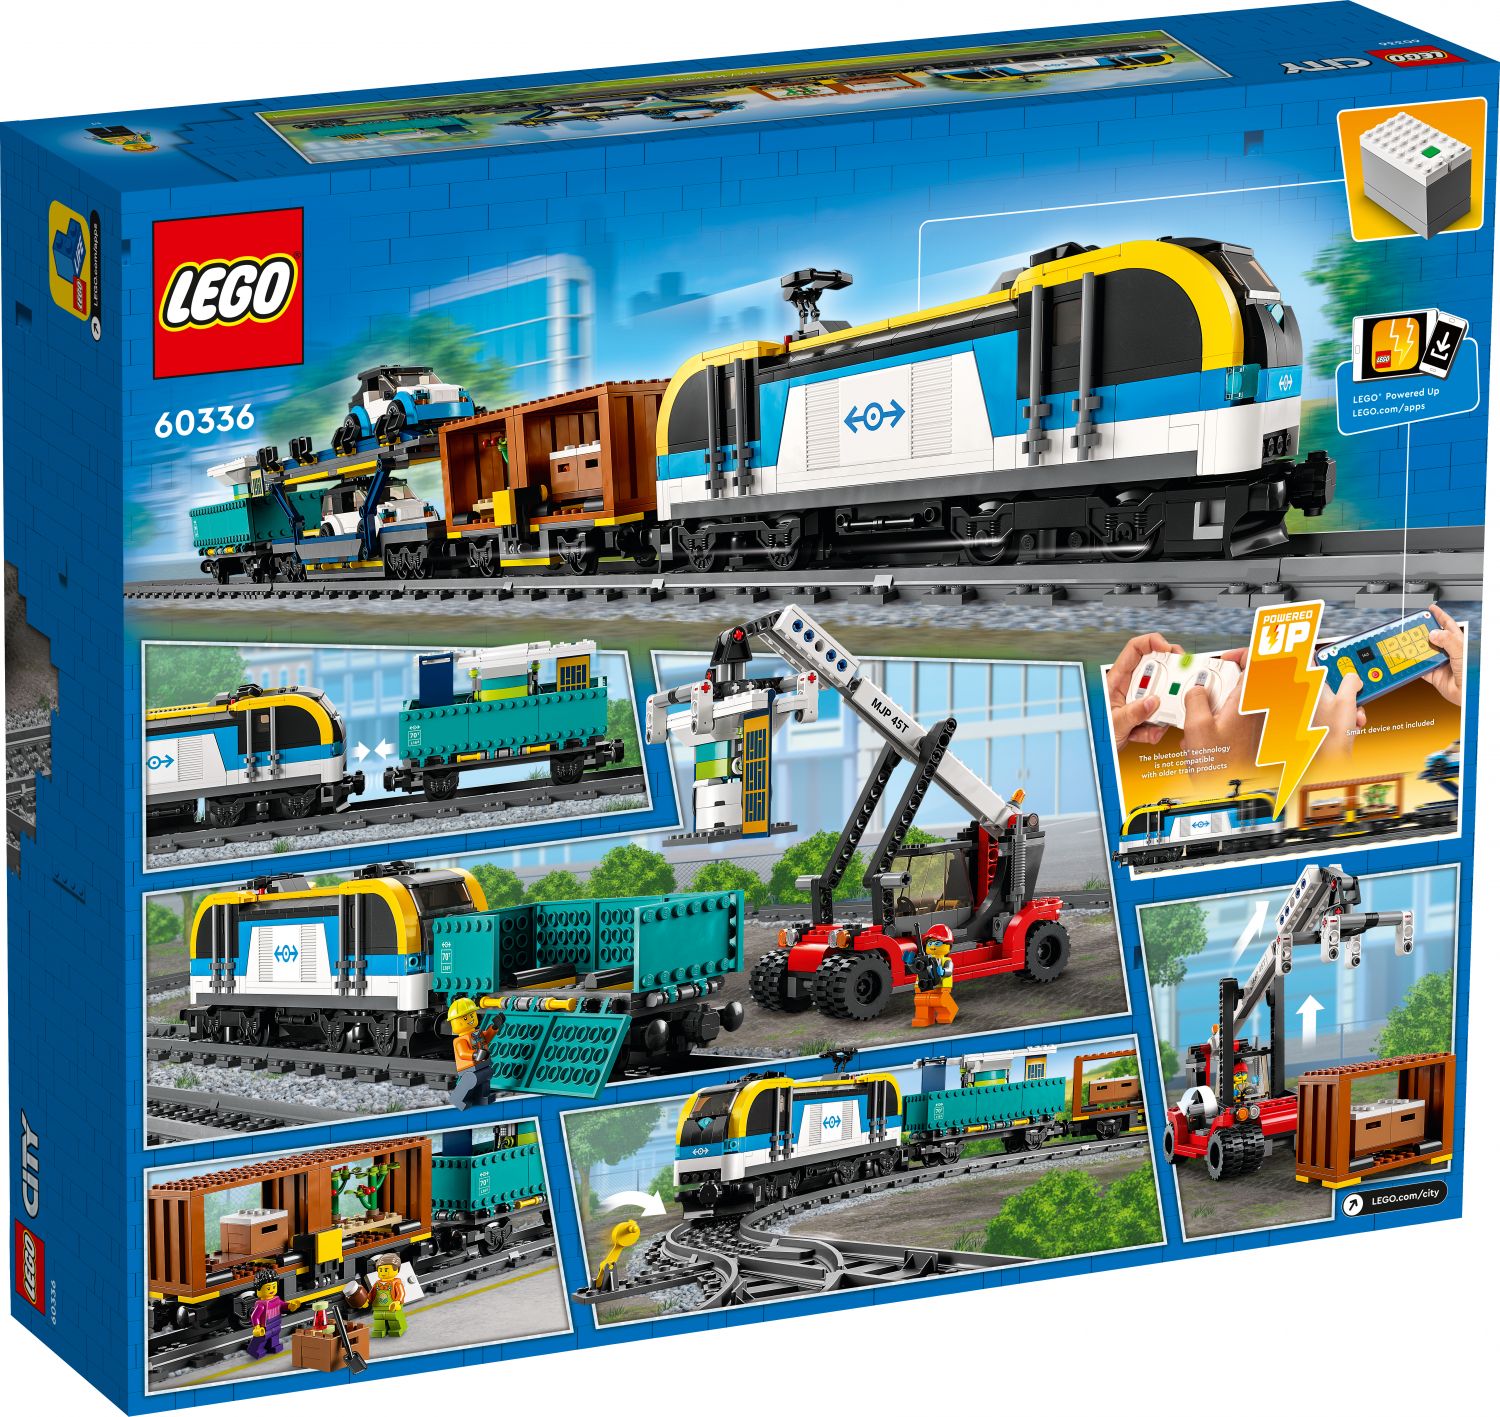 Le Prime Immagini del set LEGO City Freight Train (60336) - Mattonito